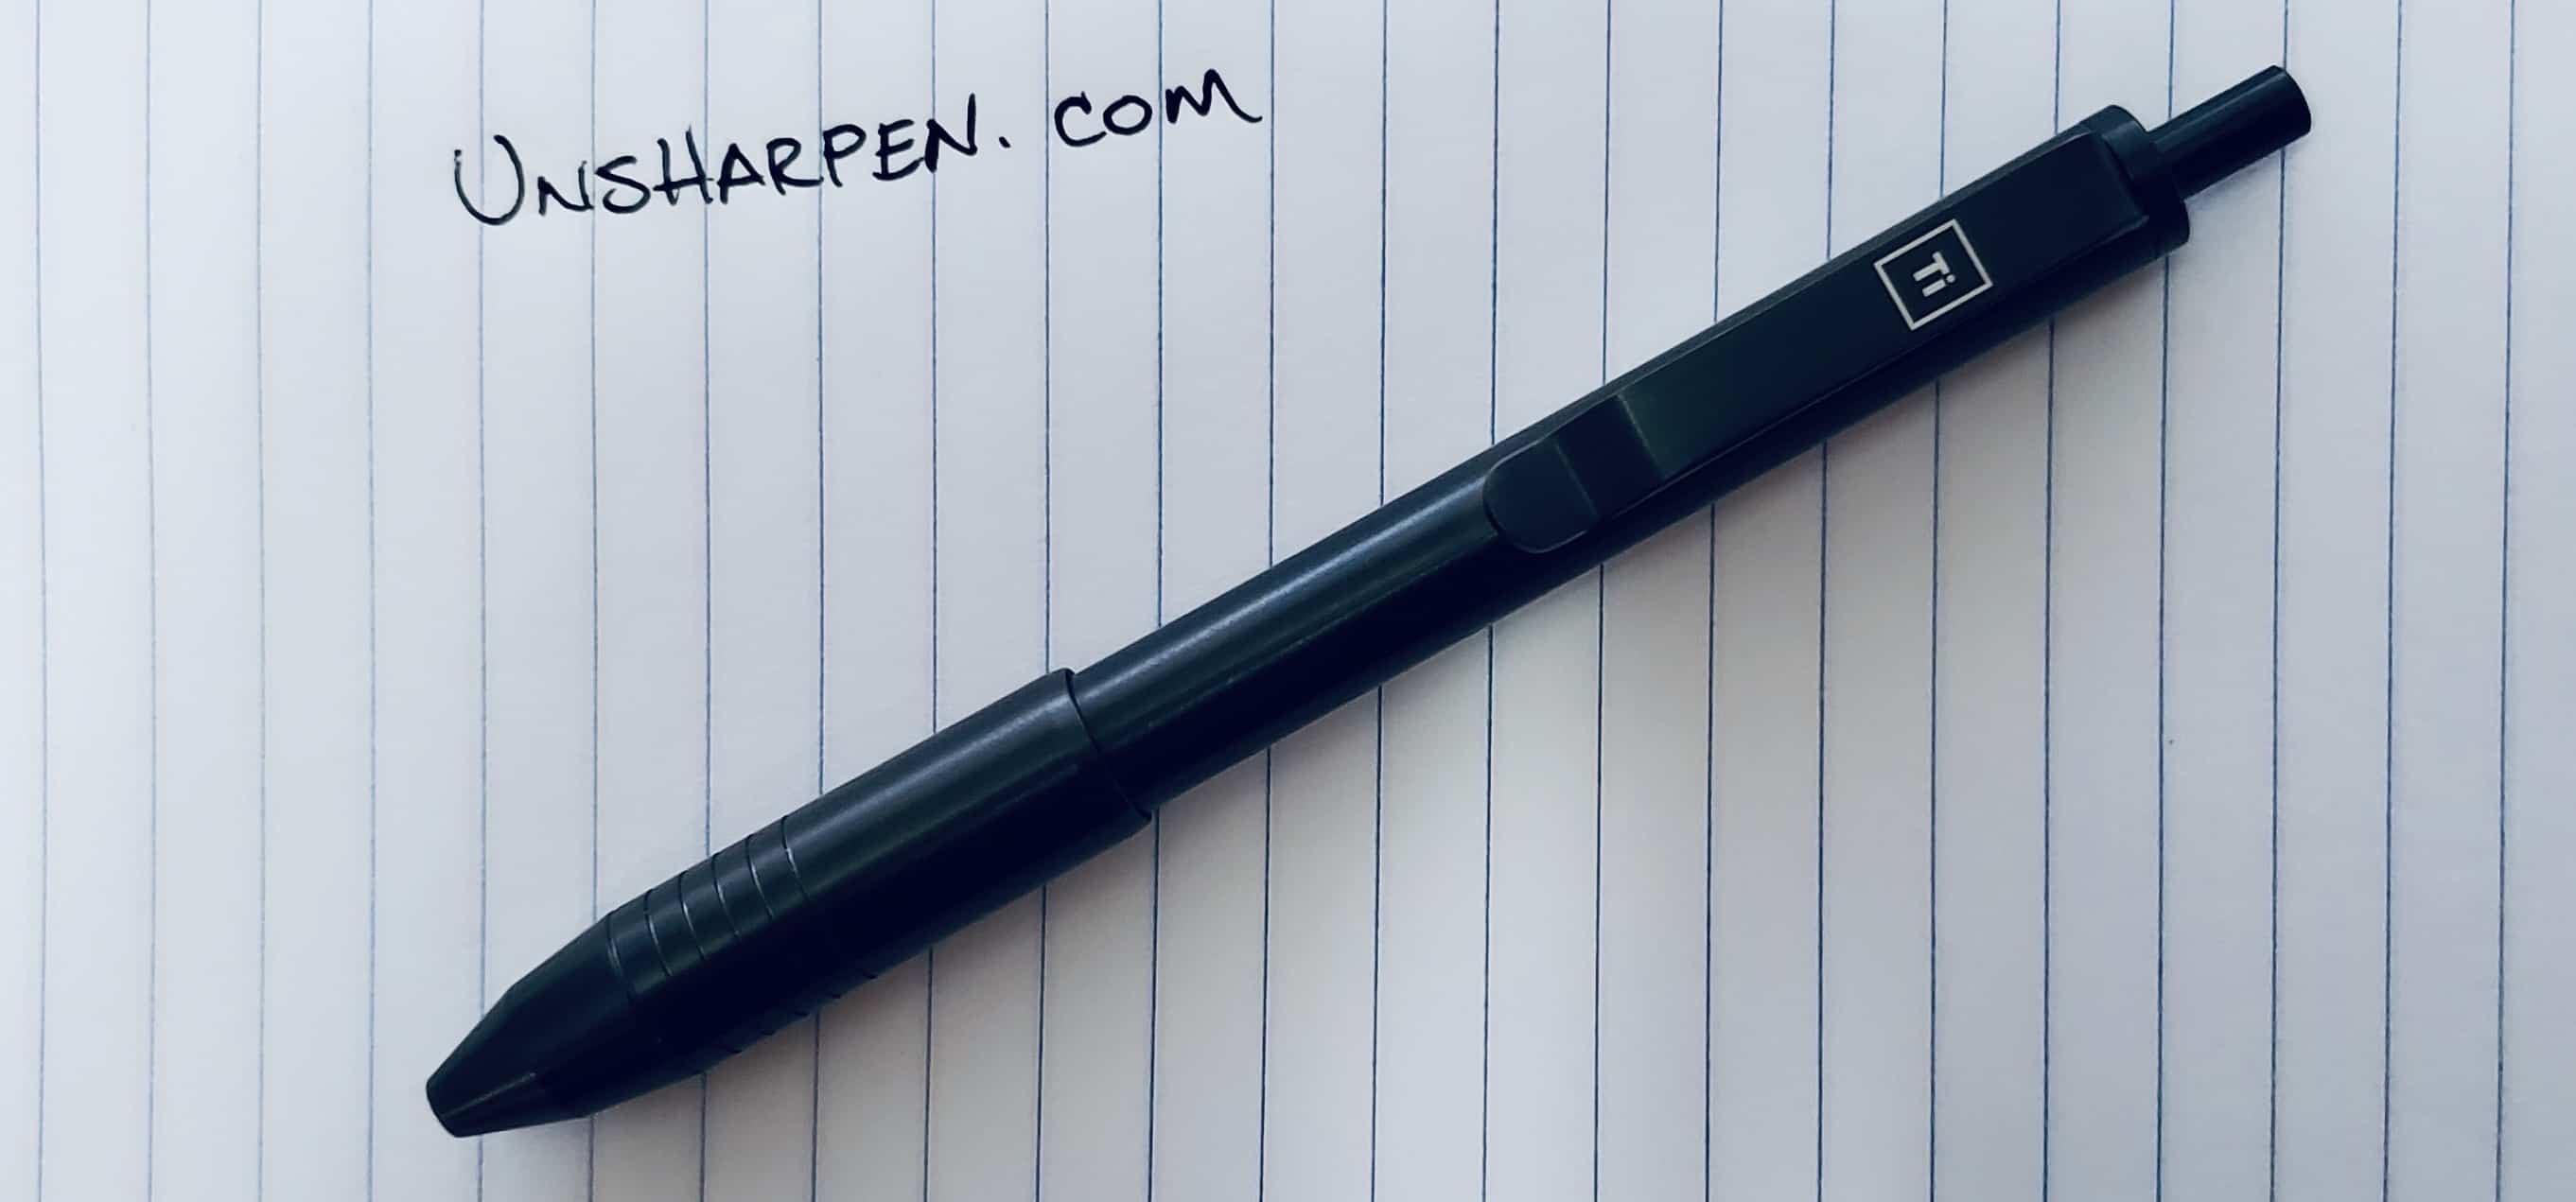 My new Big Idea Design pen : r/pens